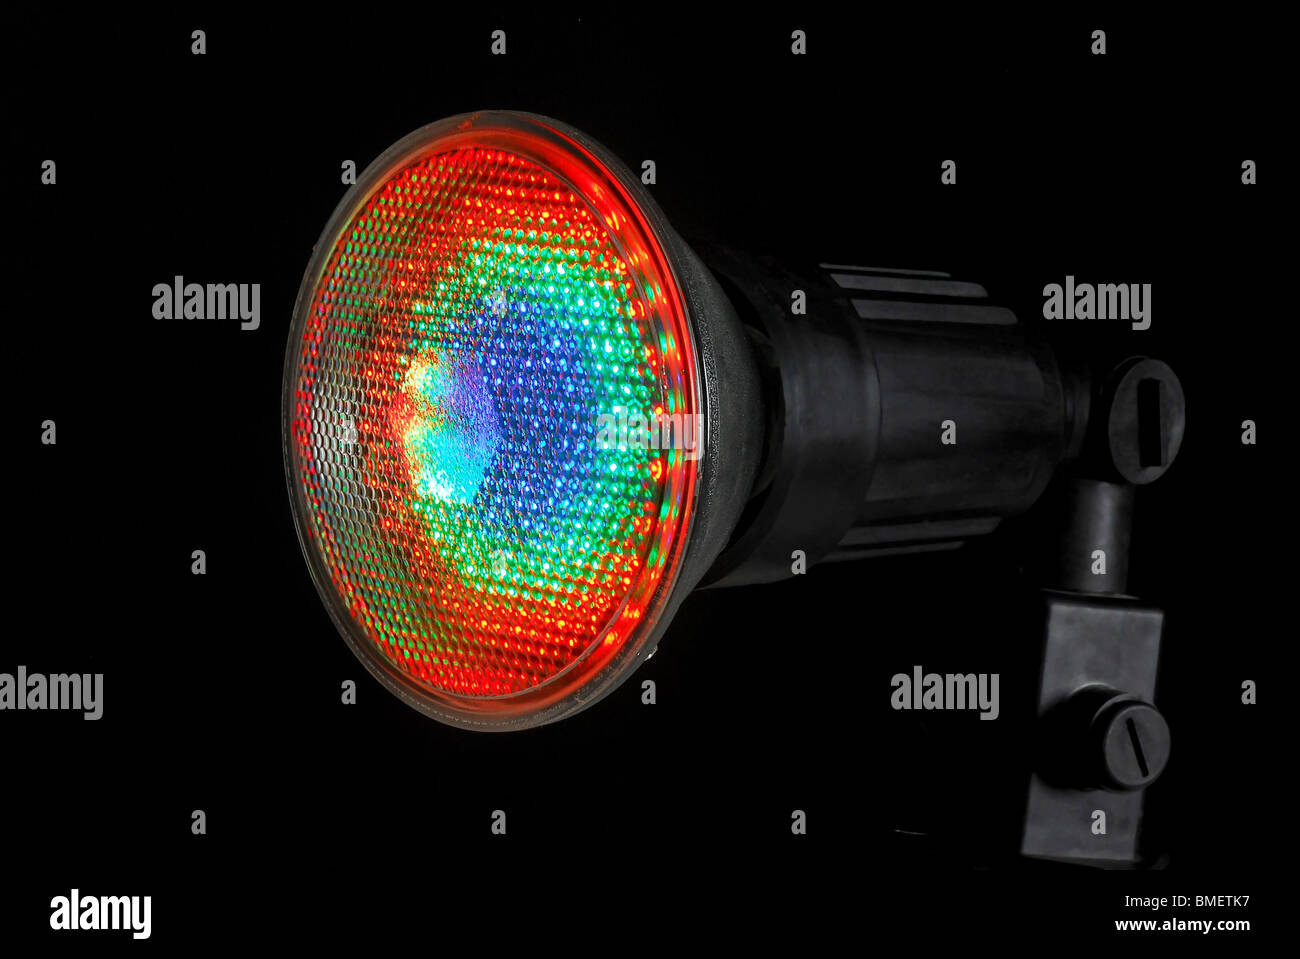 Beleuchtete LED (Light Emitting Diode) Spotlight auf schwarzem Hintergrund Stockfoto